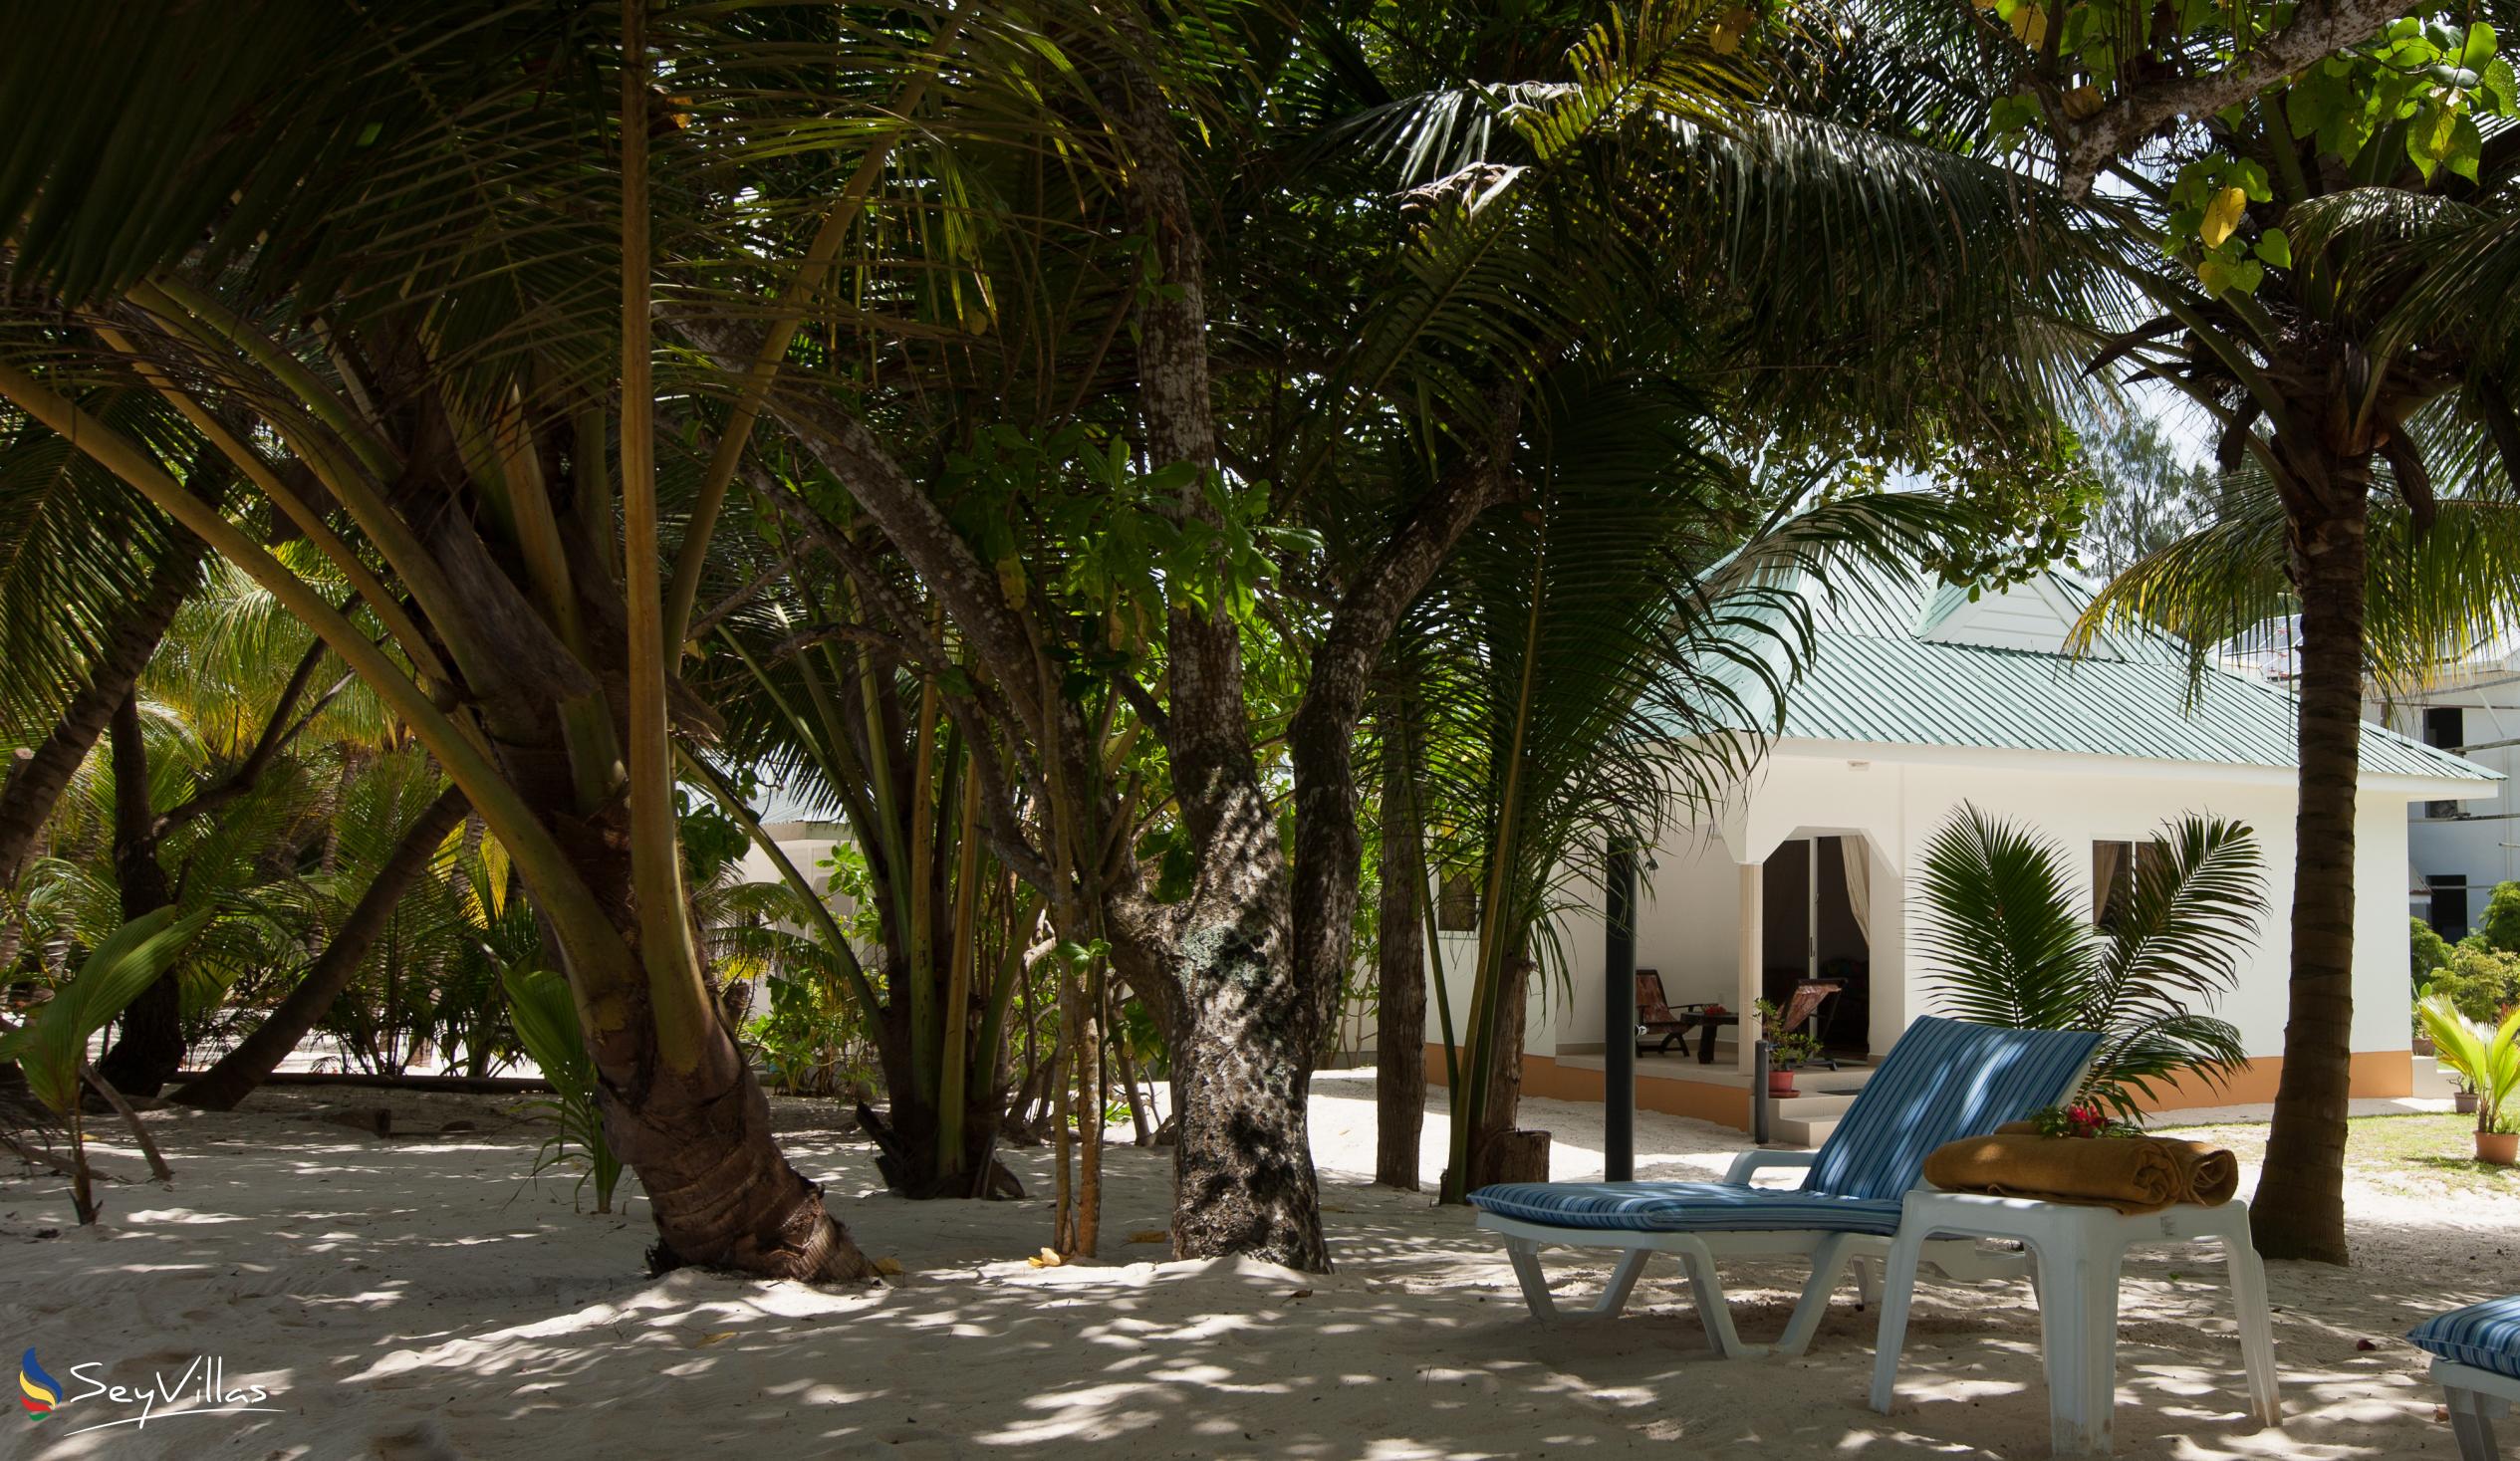 Foto 11: Villa Admiral - Aussenbereich - Praslin (Seychellen)